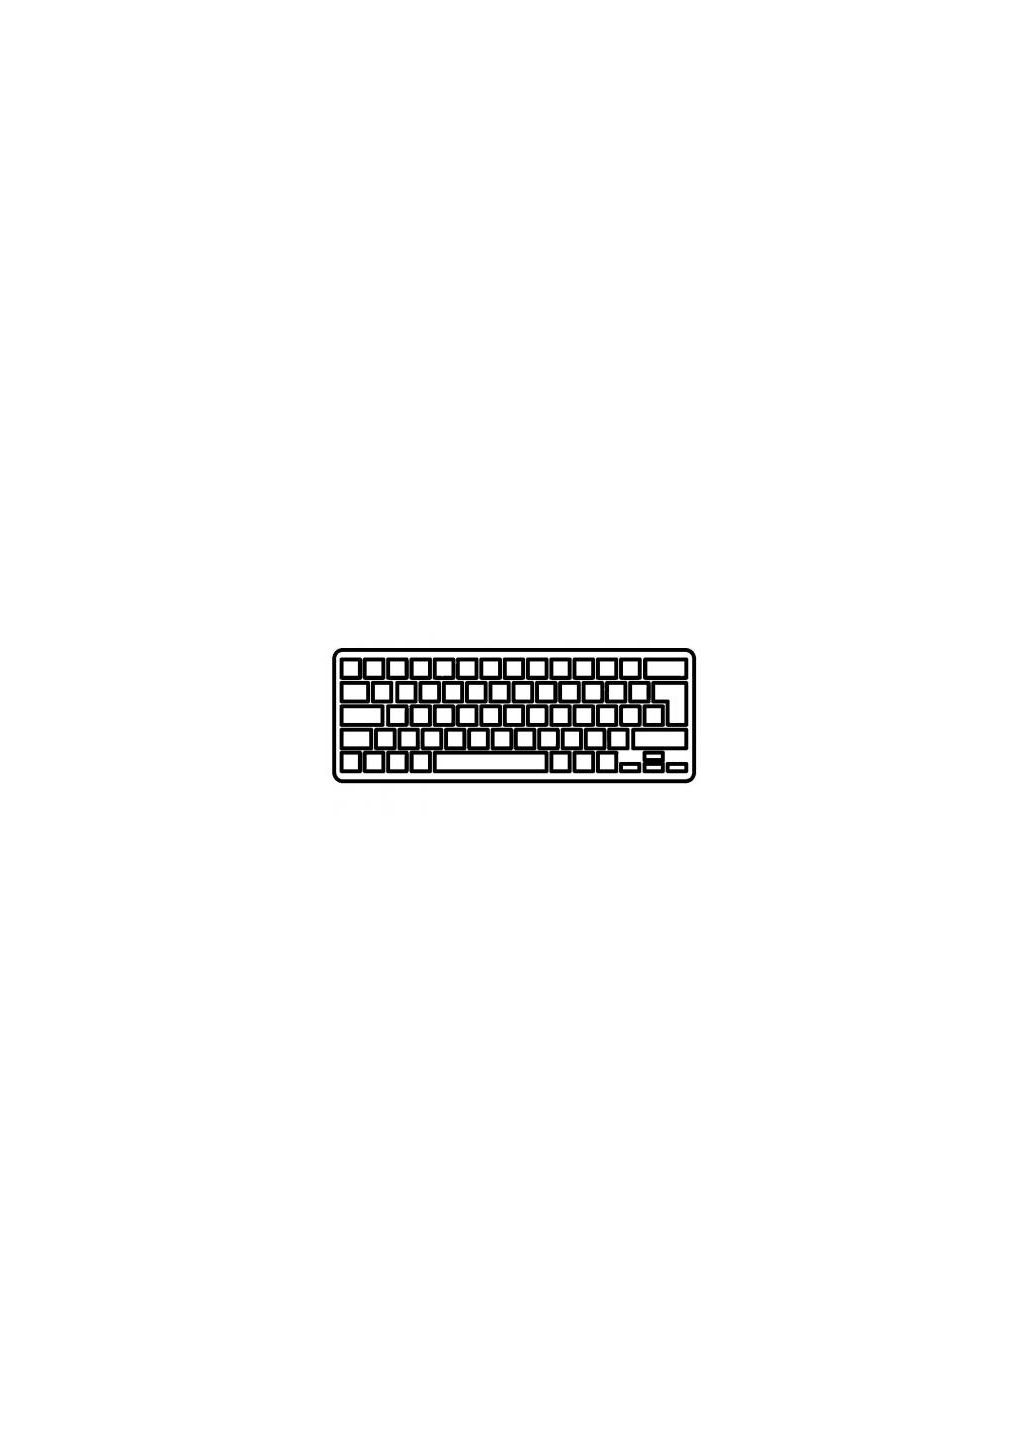 Клавиатура ноутбука (A43243) Acer aspire 7520 серая ua (276706577)